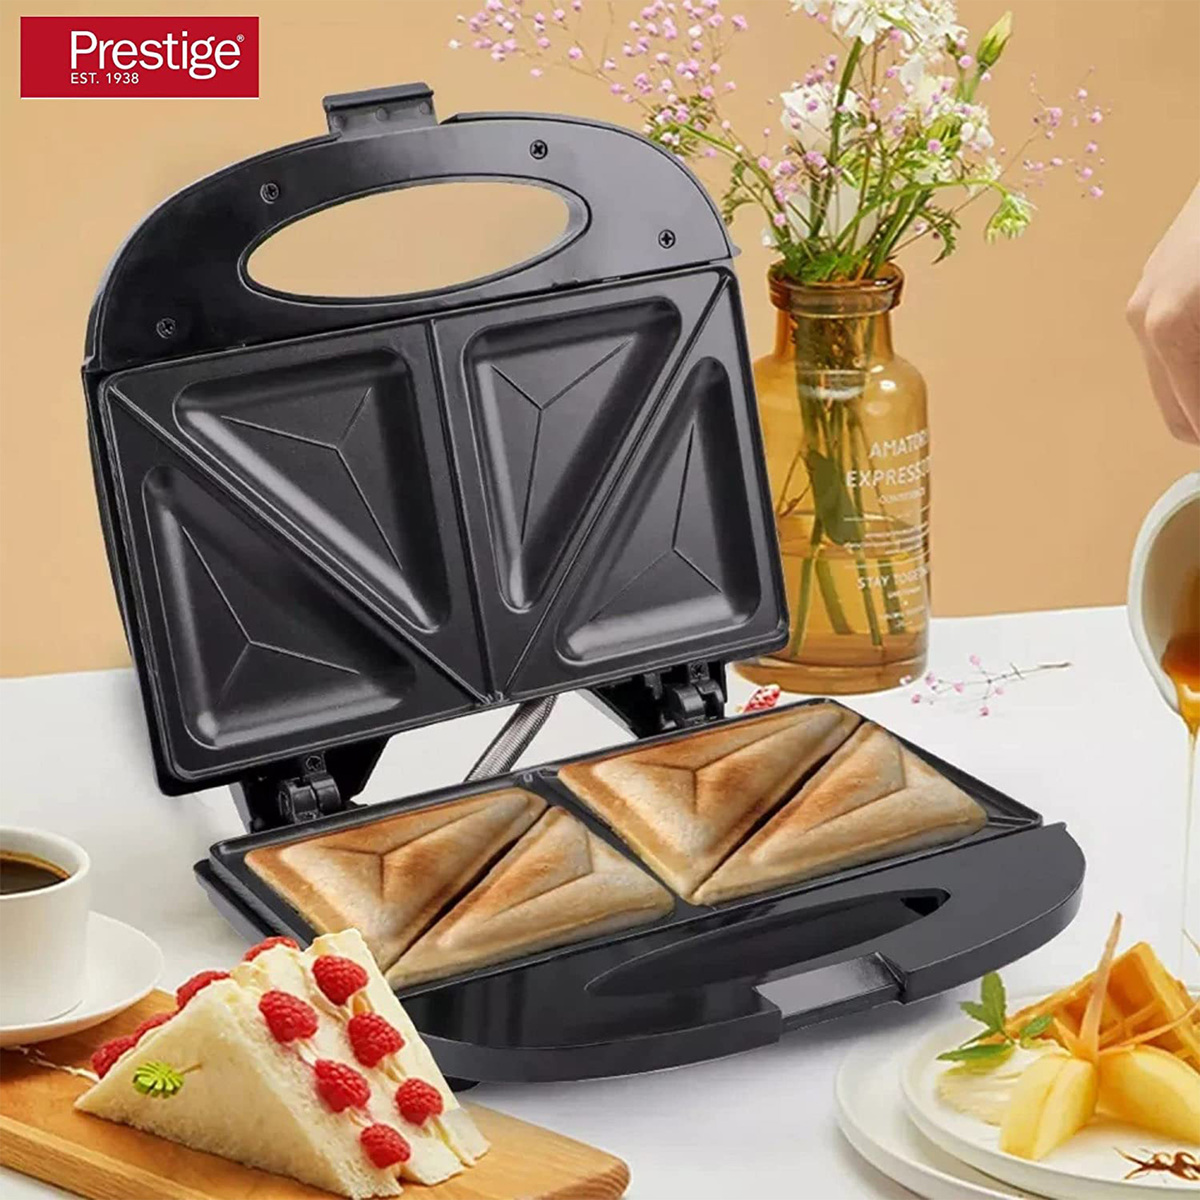 Prestige 3-in-1 Sandwich Maker with Interchangeable Plates, PR81521